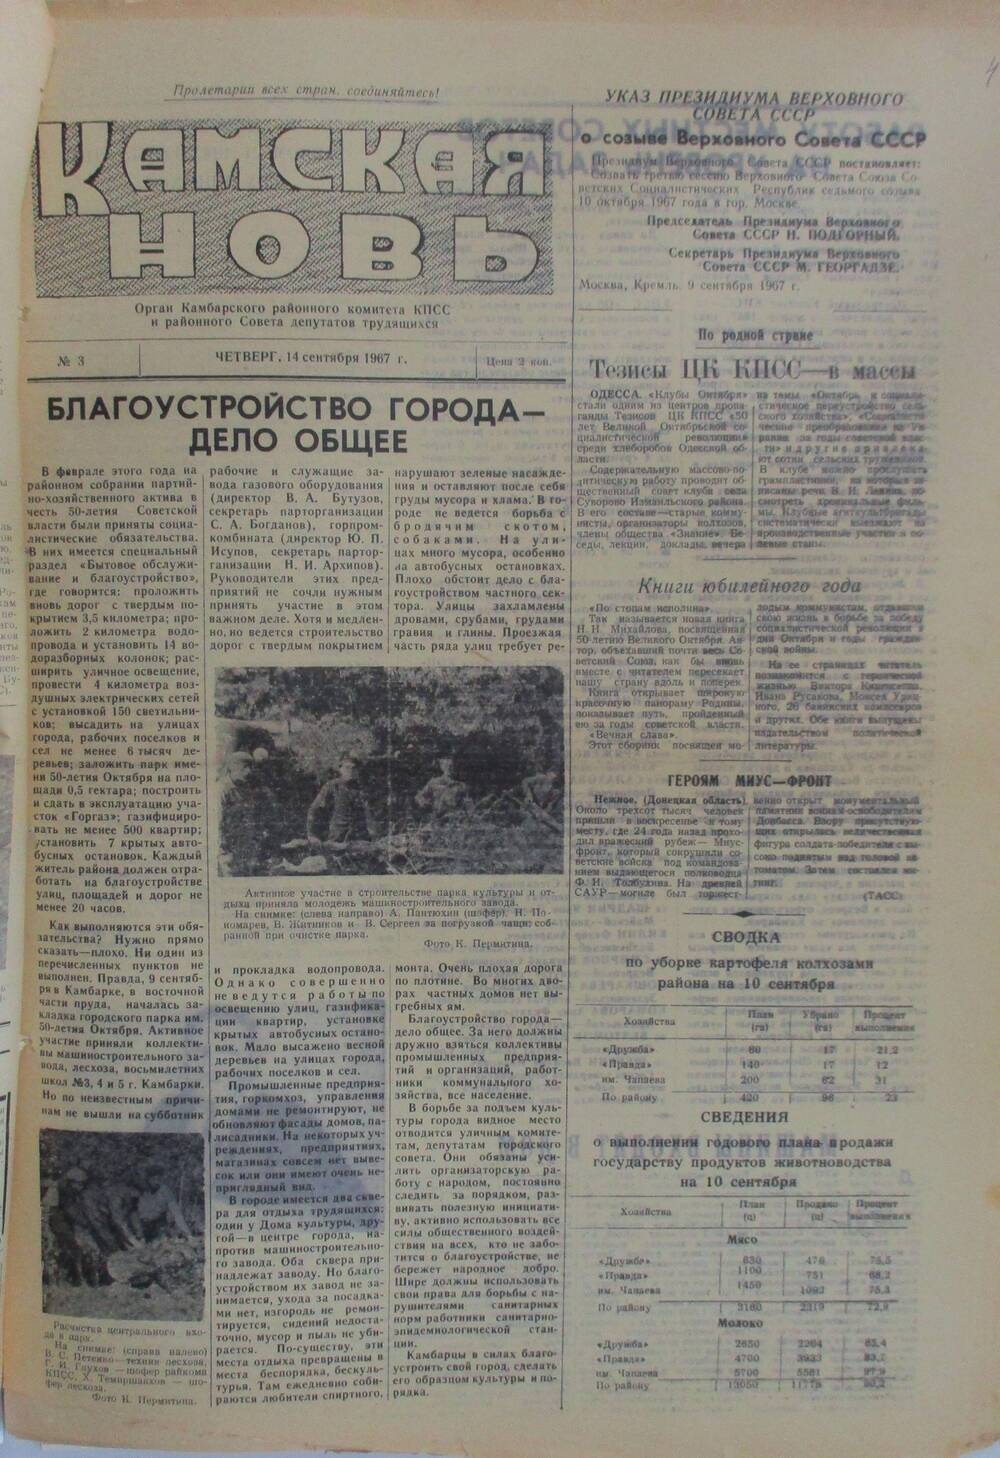 Подшивка газет Камская новь с №1 по №31, 1967 г., №3.